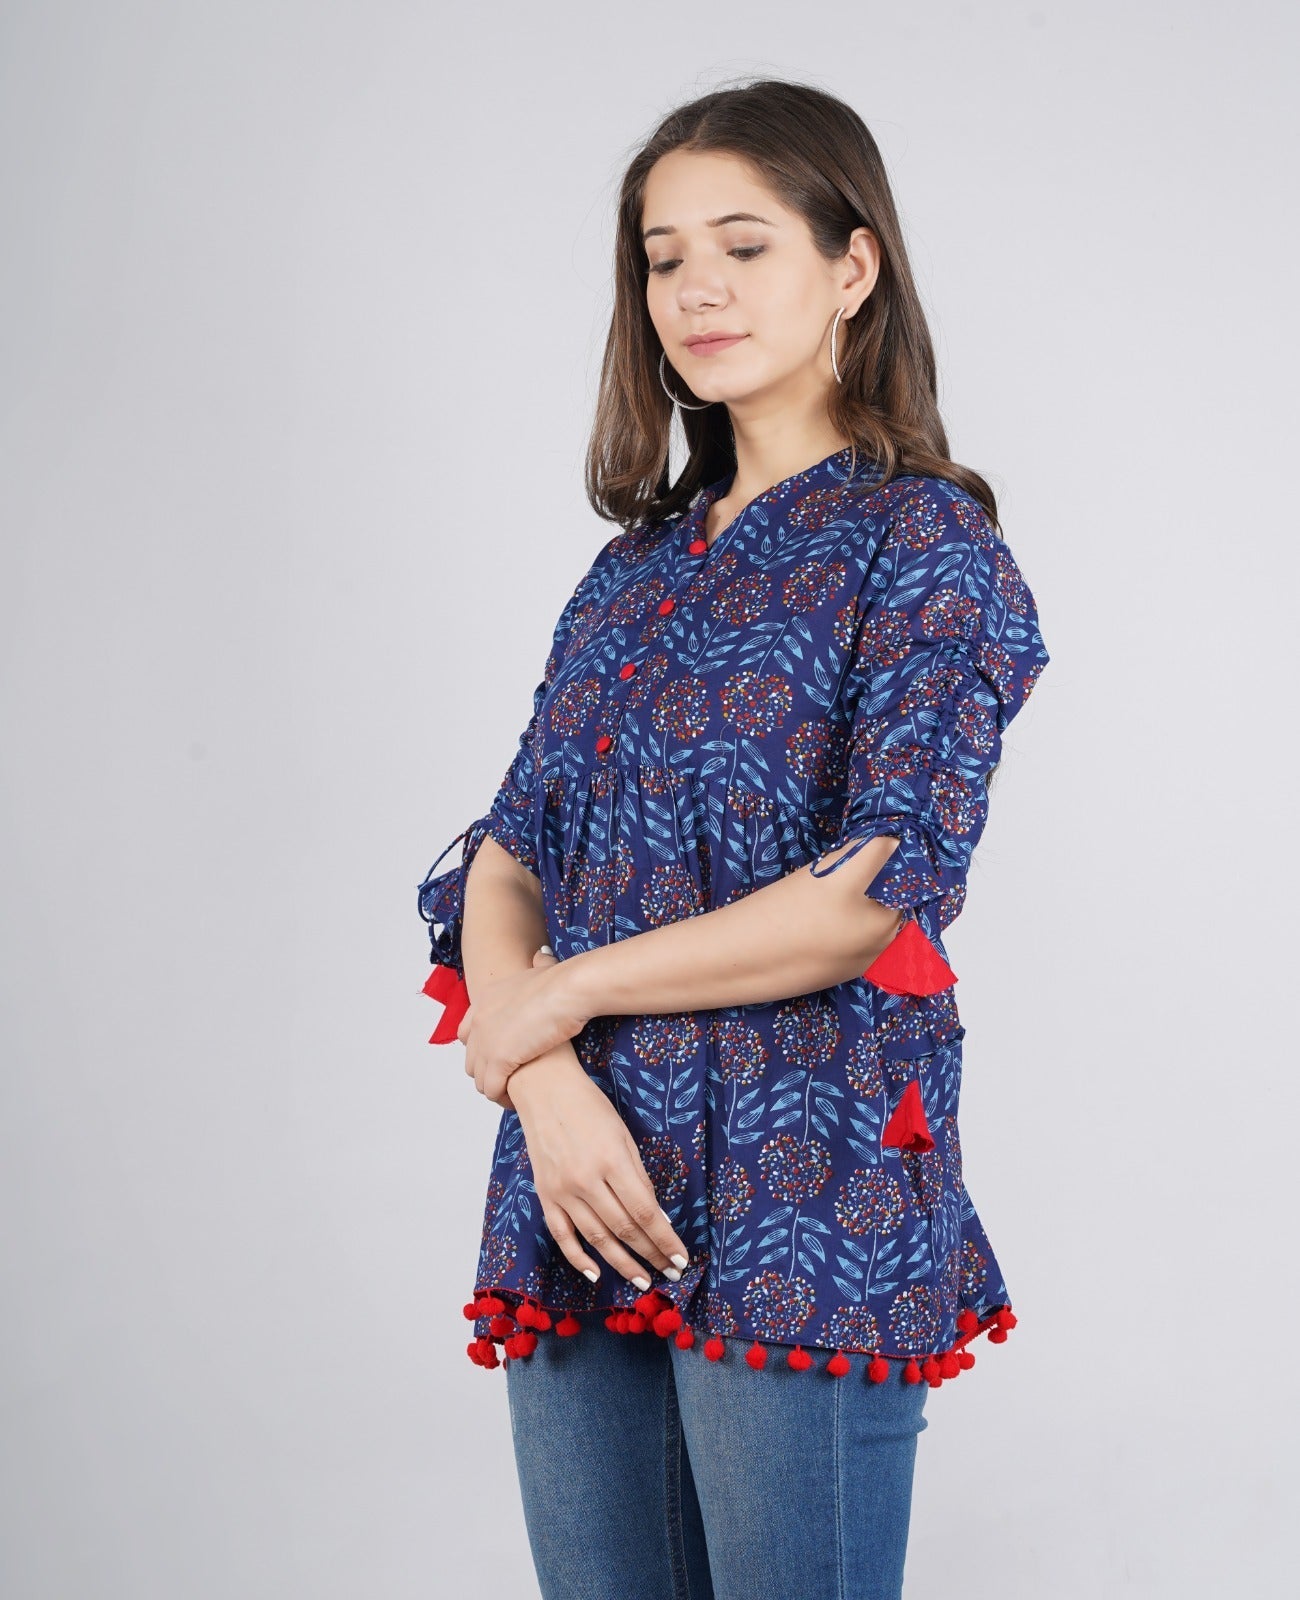 Women's Cotton Floral Print Regular Wear Top